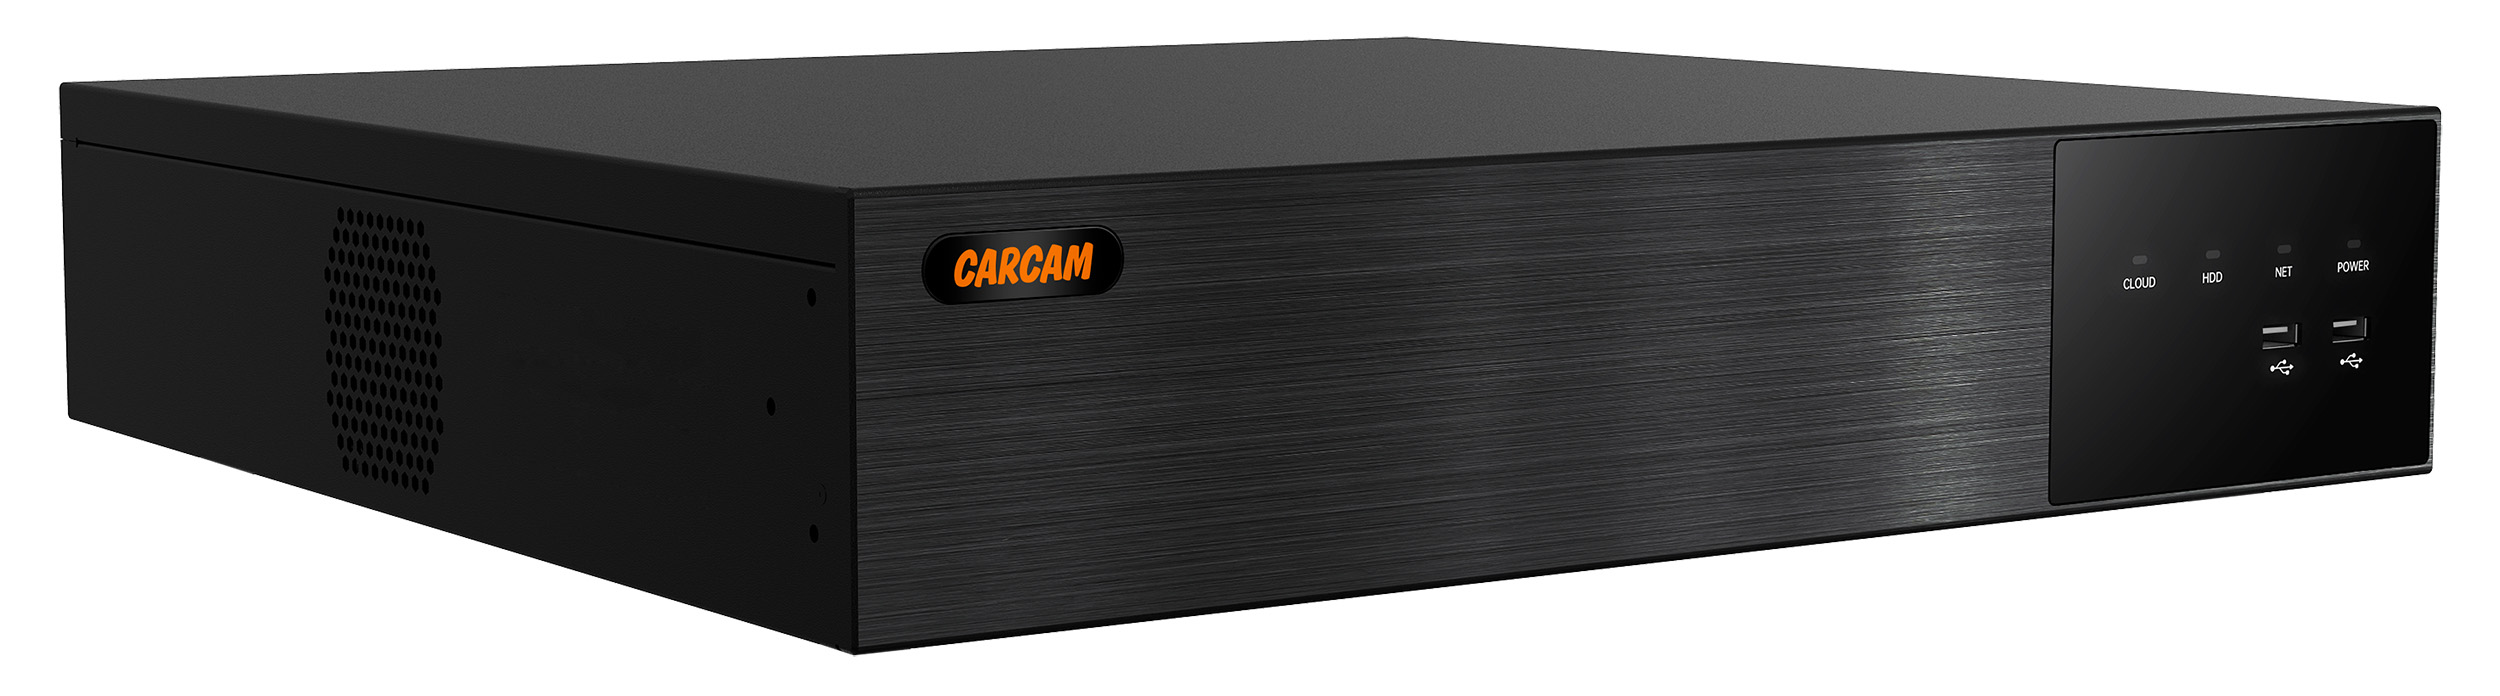 64-канальный IP-видеорегистратор CARCAM 64CH NVR 8764 64 канальный ip видеорегистратор carcam 64ch poe nvr8864